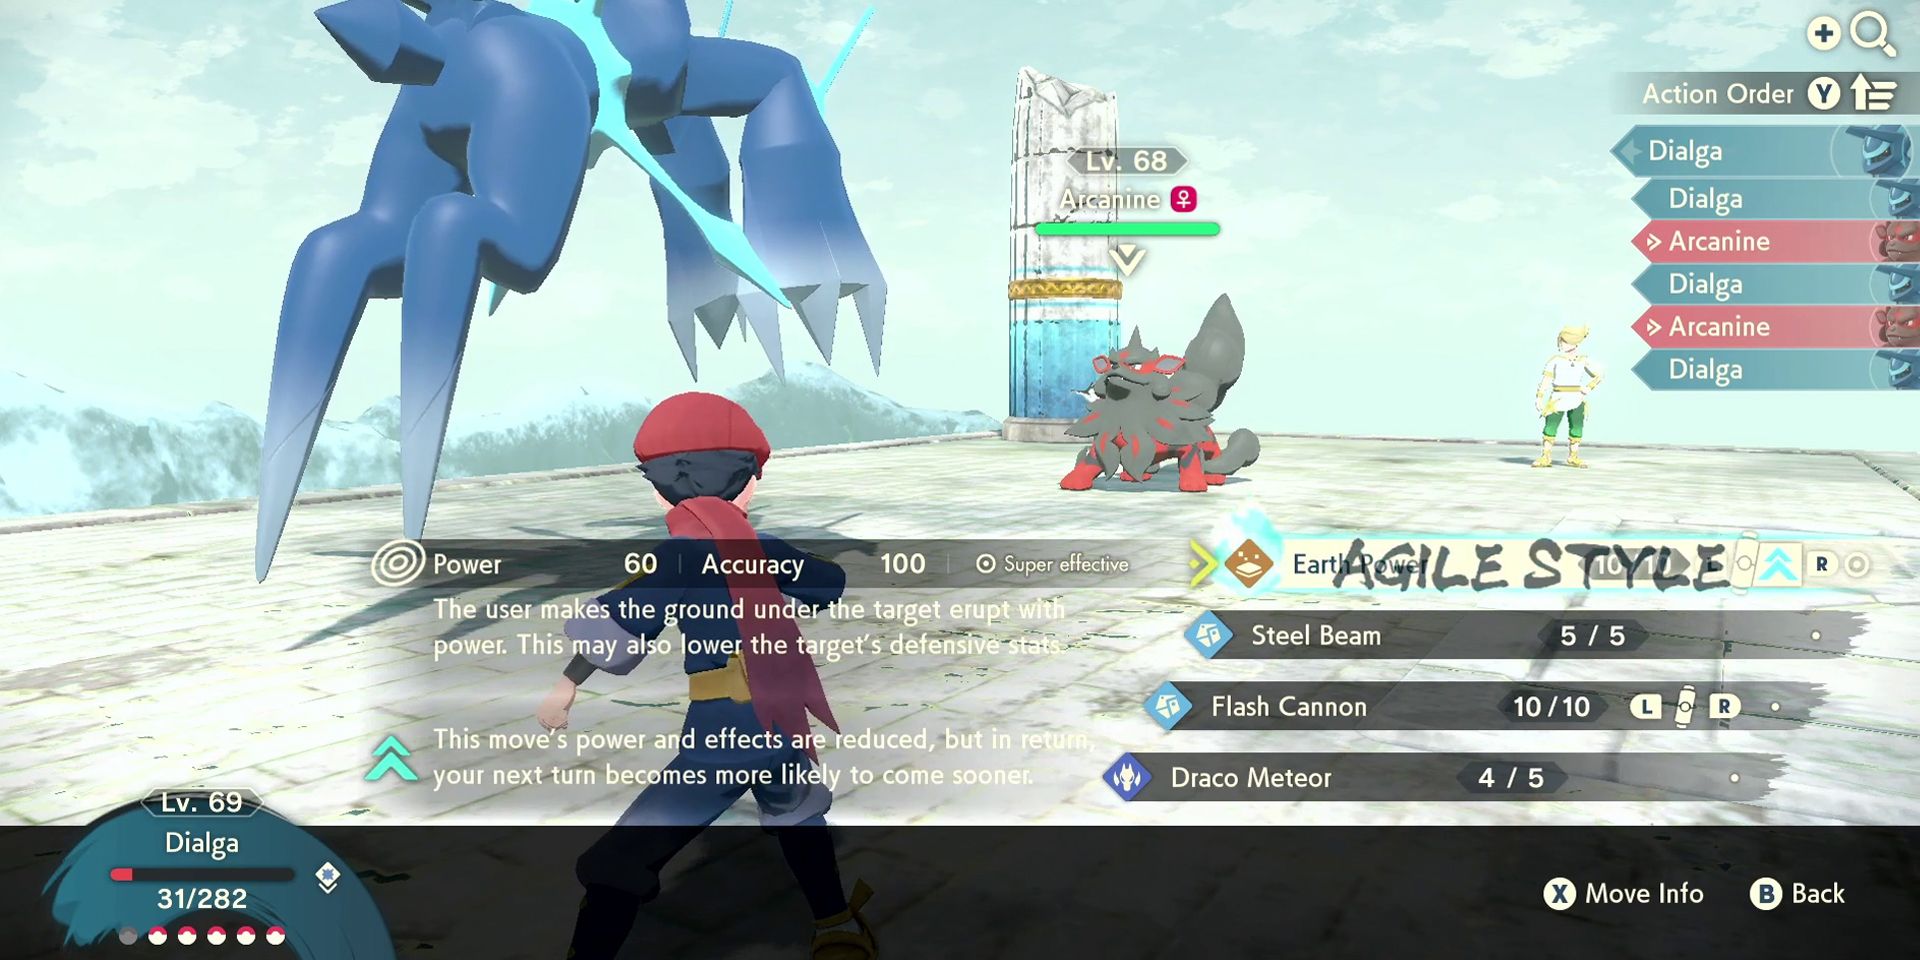 Arceus using Agile style attack in Pokemon Legends Arceus